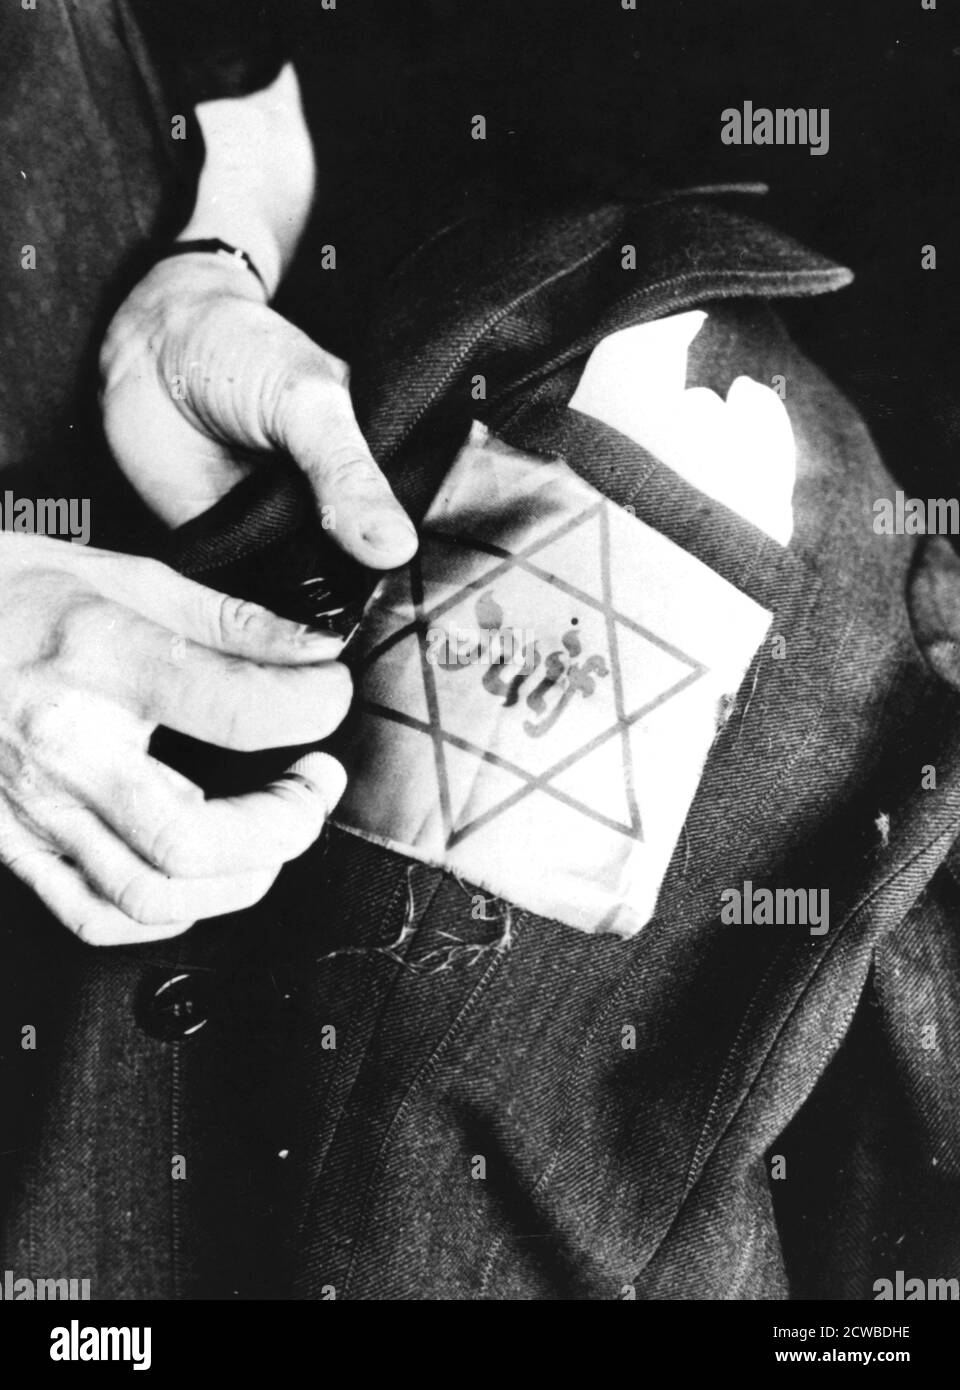 Nähen des gelben Sterns, der einen Juden identifiziert, auf eine Jacke, deutsch-okkupiert Paris, 1942. Das Leben für französische Juden war unter der Nazi-Besatzung unterdrückend. Kollaborateure im besetzten Teil des Landes und in dem vom Vichy-Regime kontrollierten Gebiet arbeiteten enthusiastisch bei der Verfolgung zusammen. Die jüdische Bevölkerung war ab 1941 gezwungen, den gelben Stern auf ihrer Kleidung zu tragen. In den Jahren 1942-1944 wurden 76,000 Juden in Konzentrationslager deportiert. Nur 2500 überlebten. Der Fotograf ist unbekannt. Stockfoto